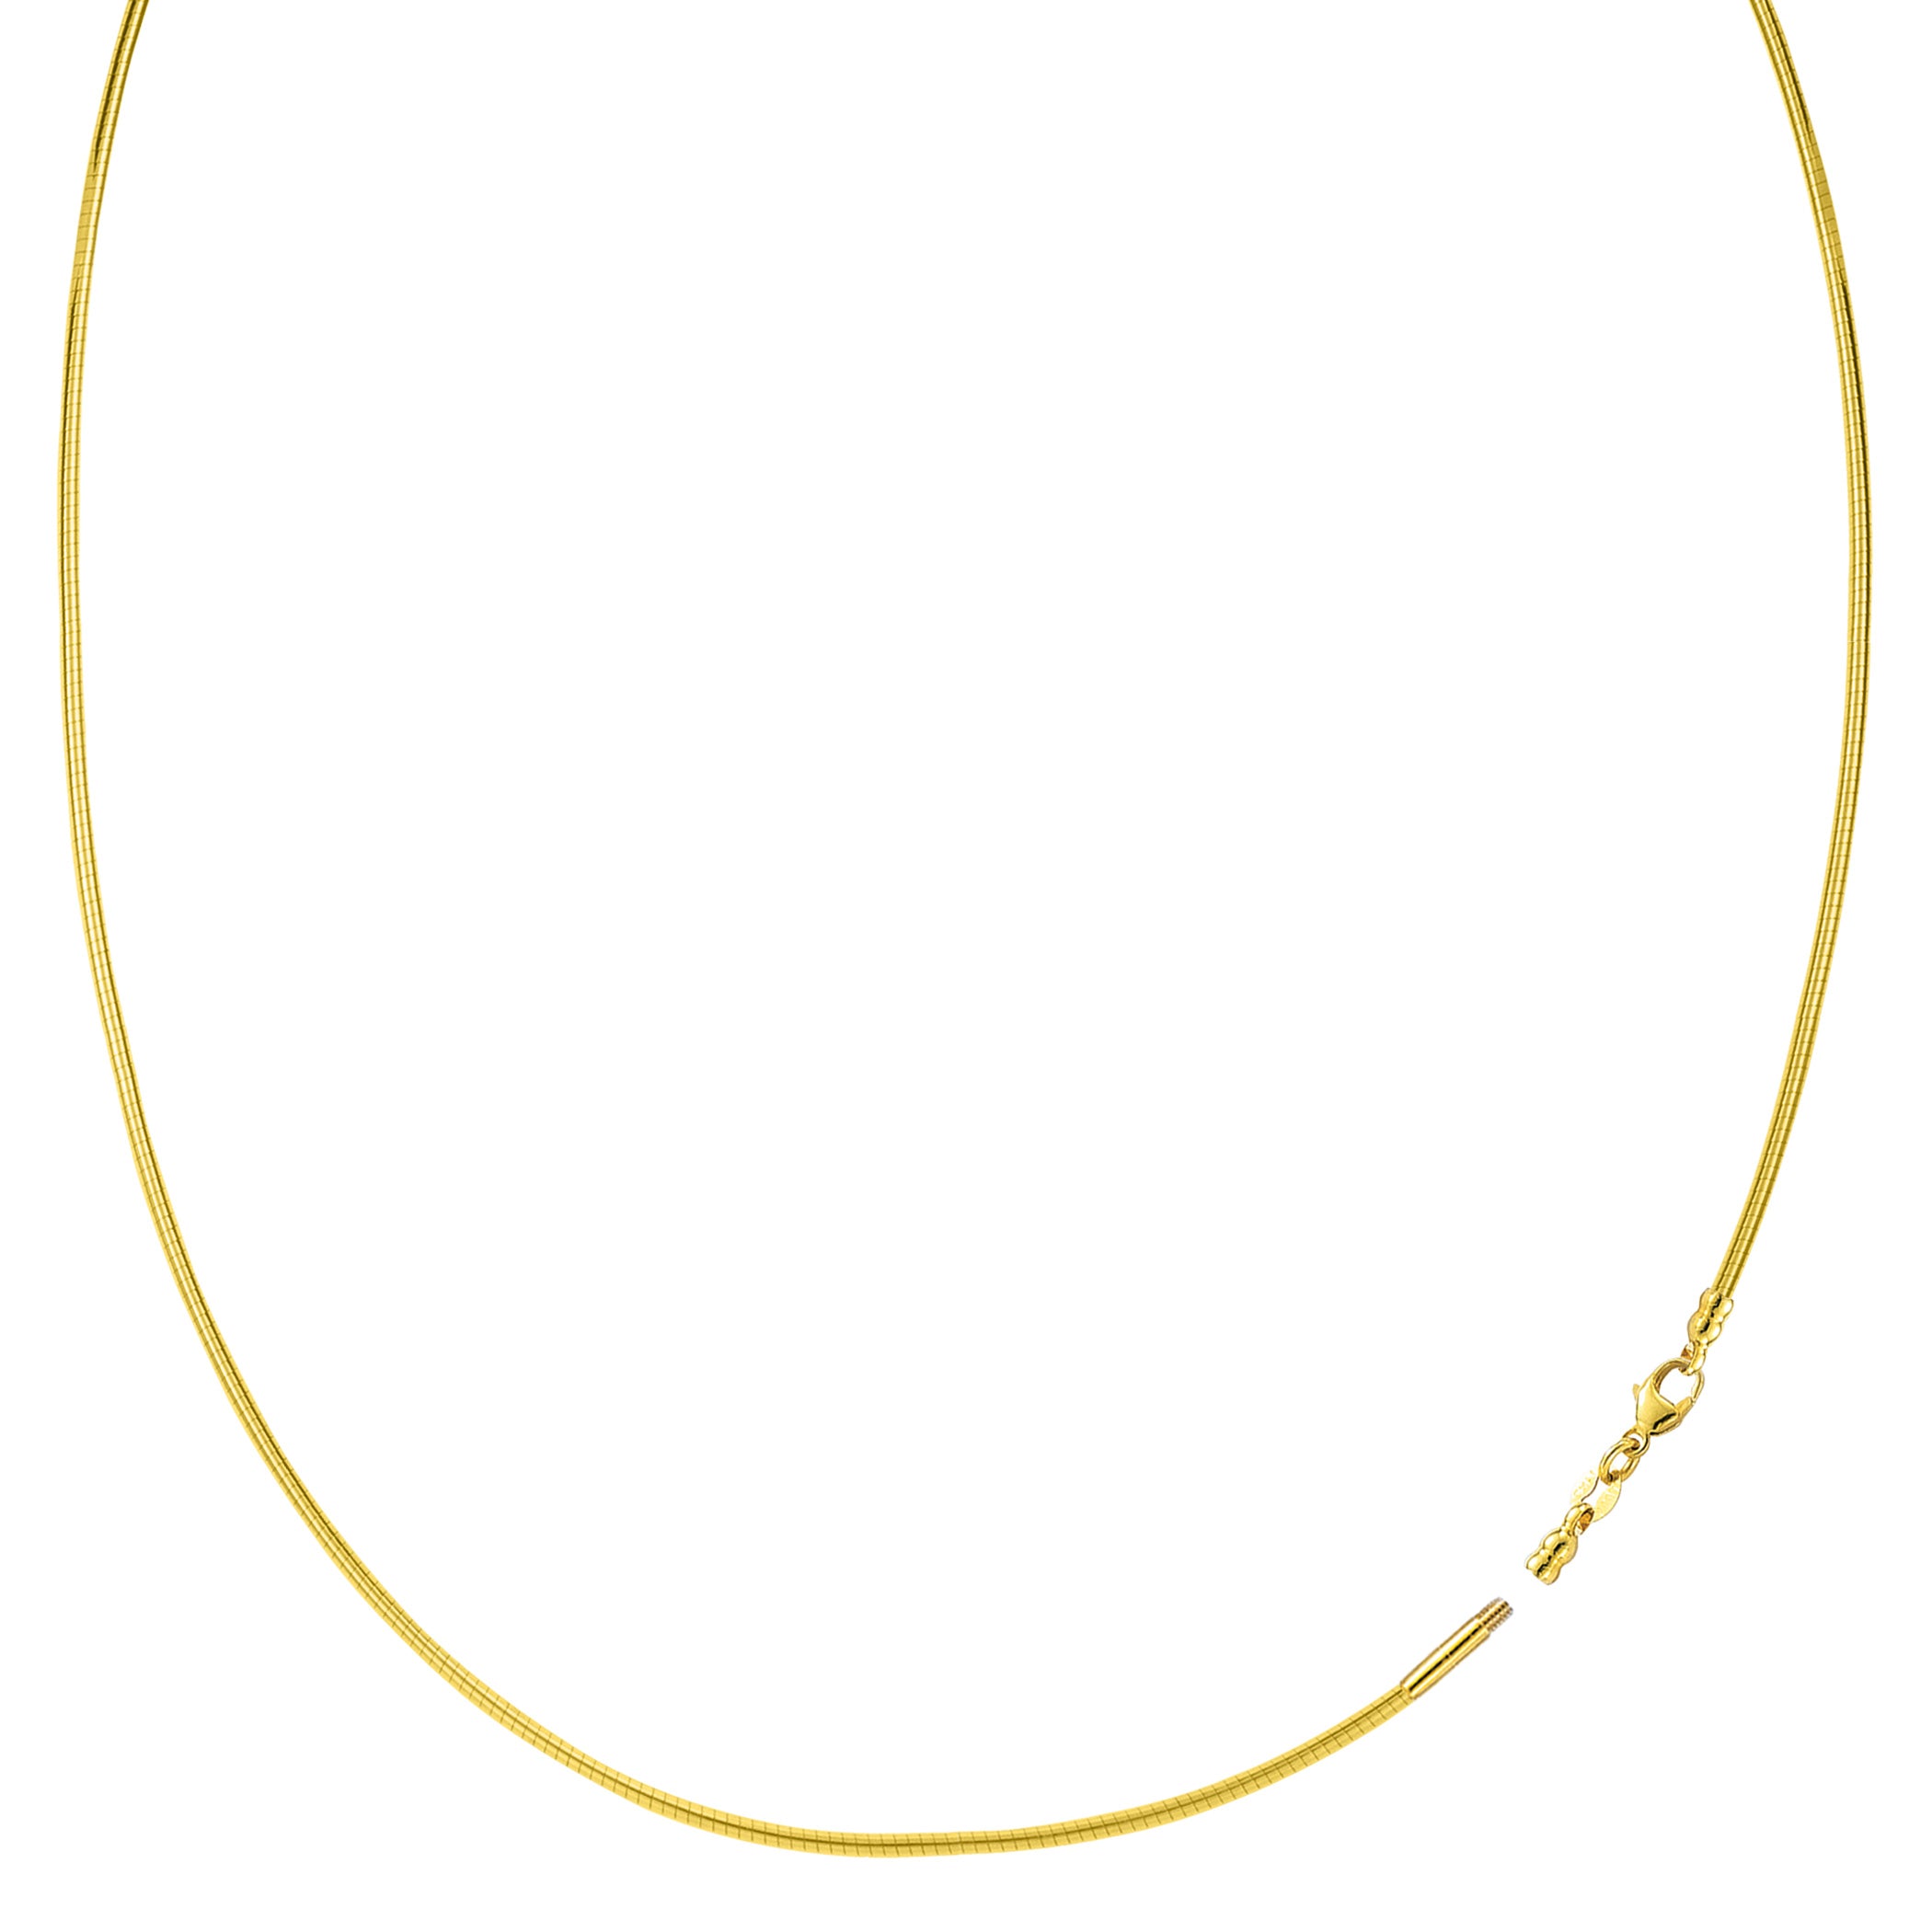 Rundt Omega-kjedekjede med skrulås i 14k gult gull fine designersmykker for menn og kvinner